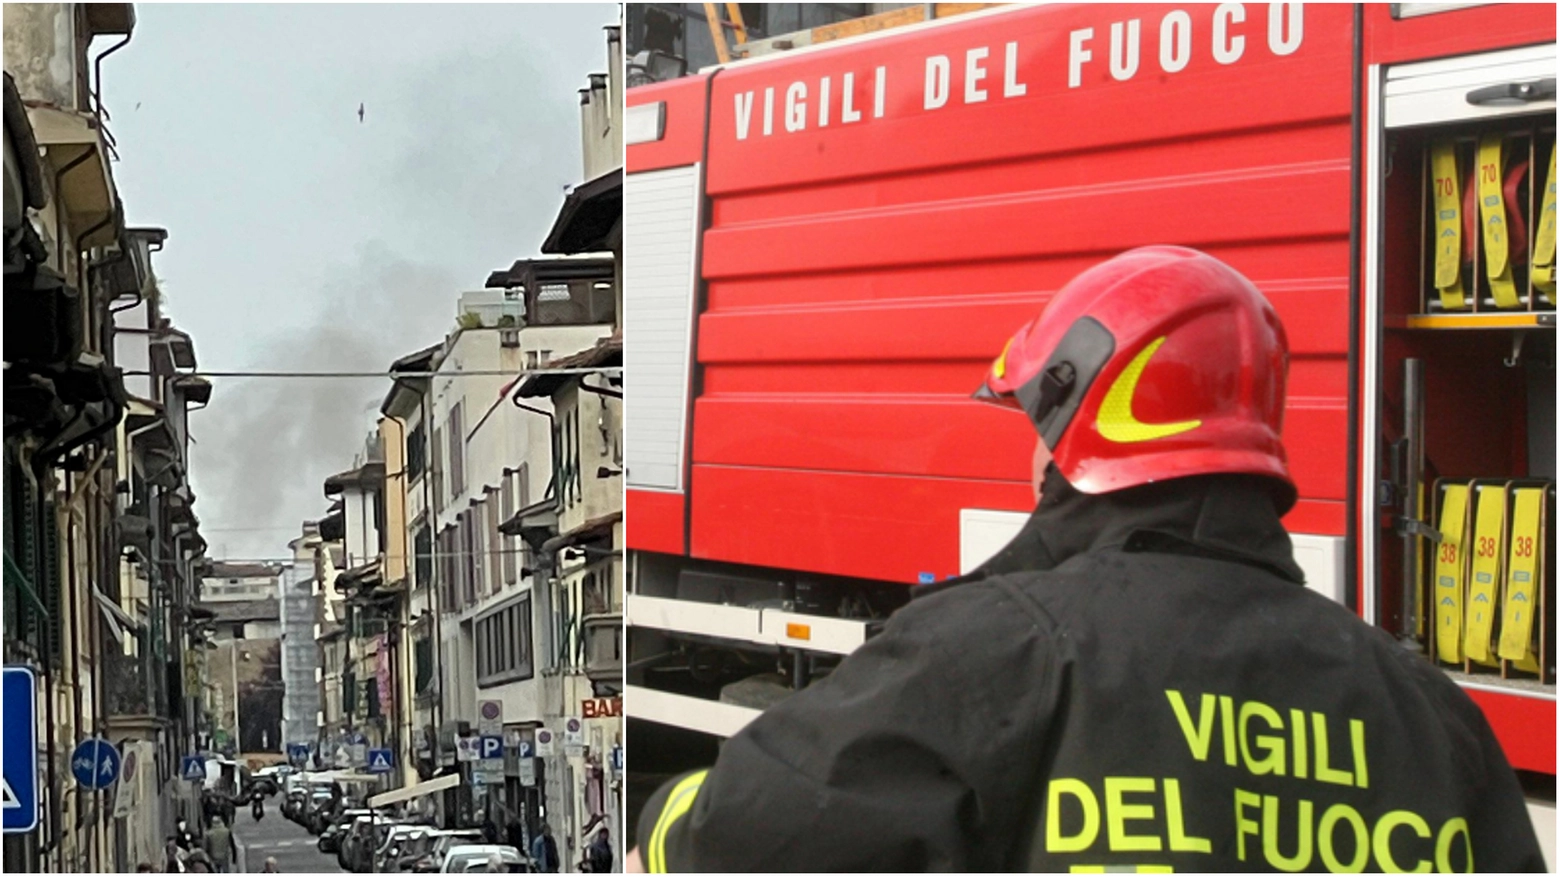 La colonna di fumo sopra Firenze, intervento dei vigili del fuoco